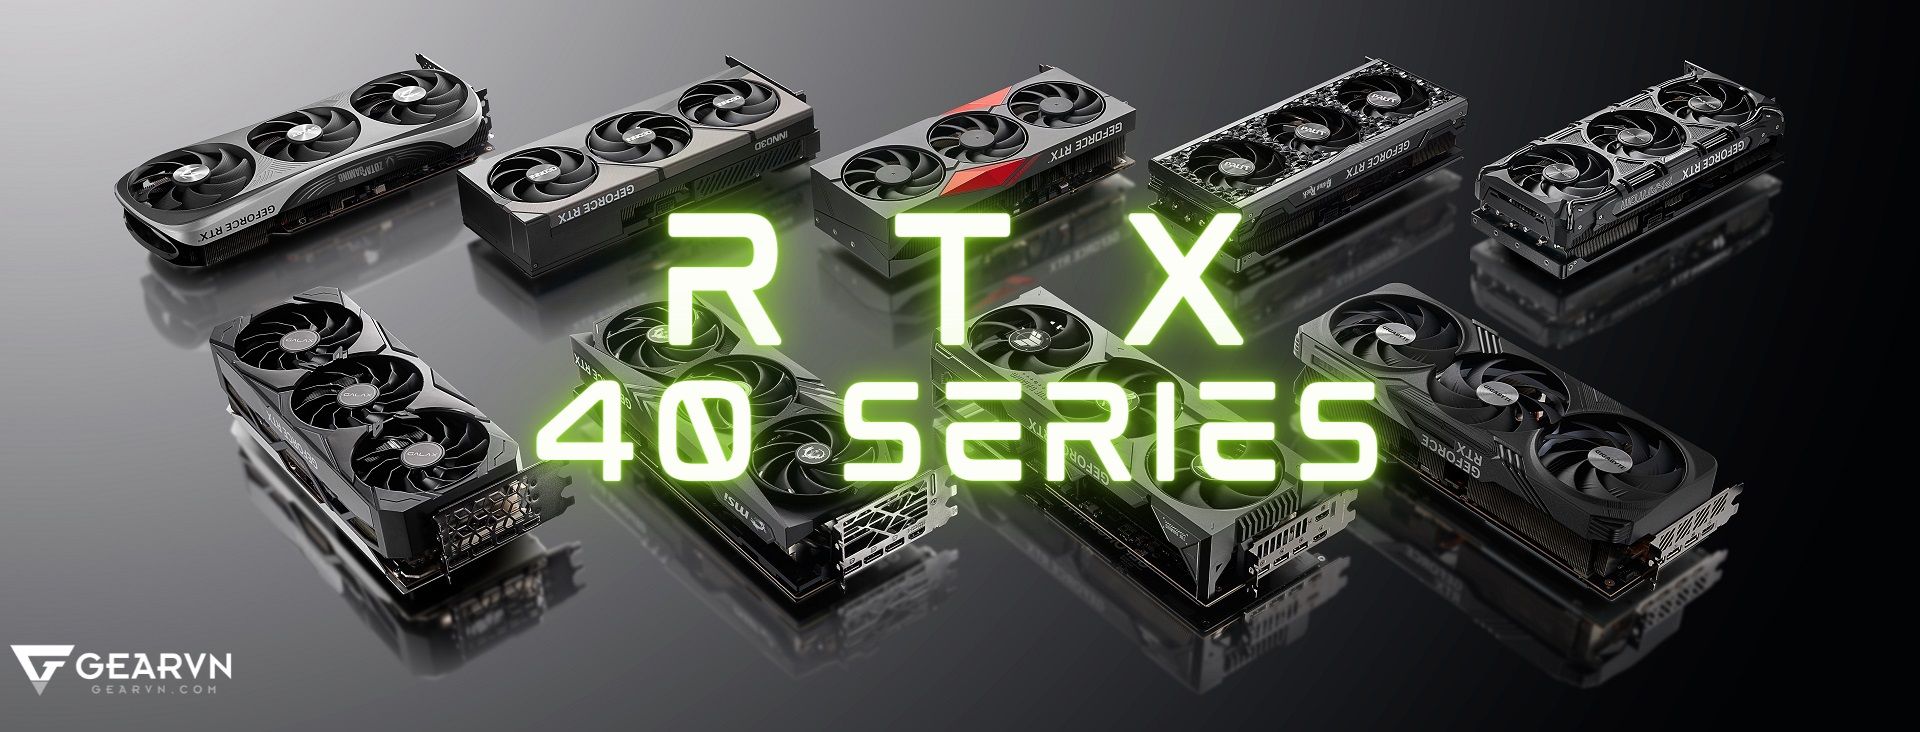 NVIDIA GeForce RTX 40 Series và những điều bạn nên biết